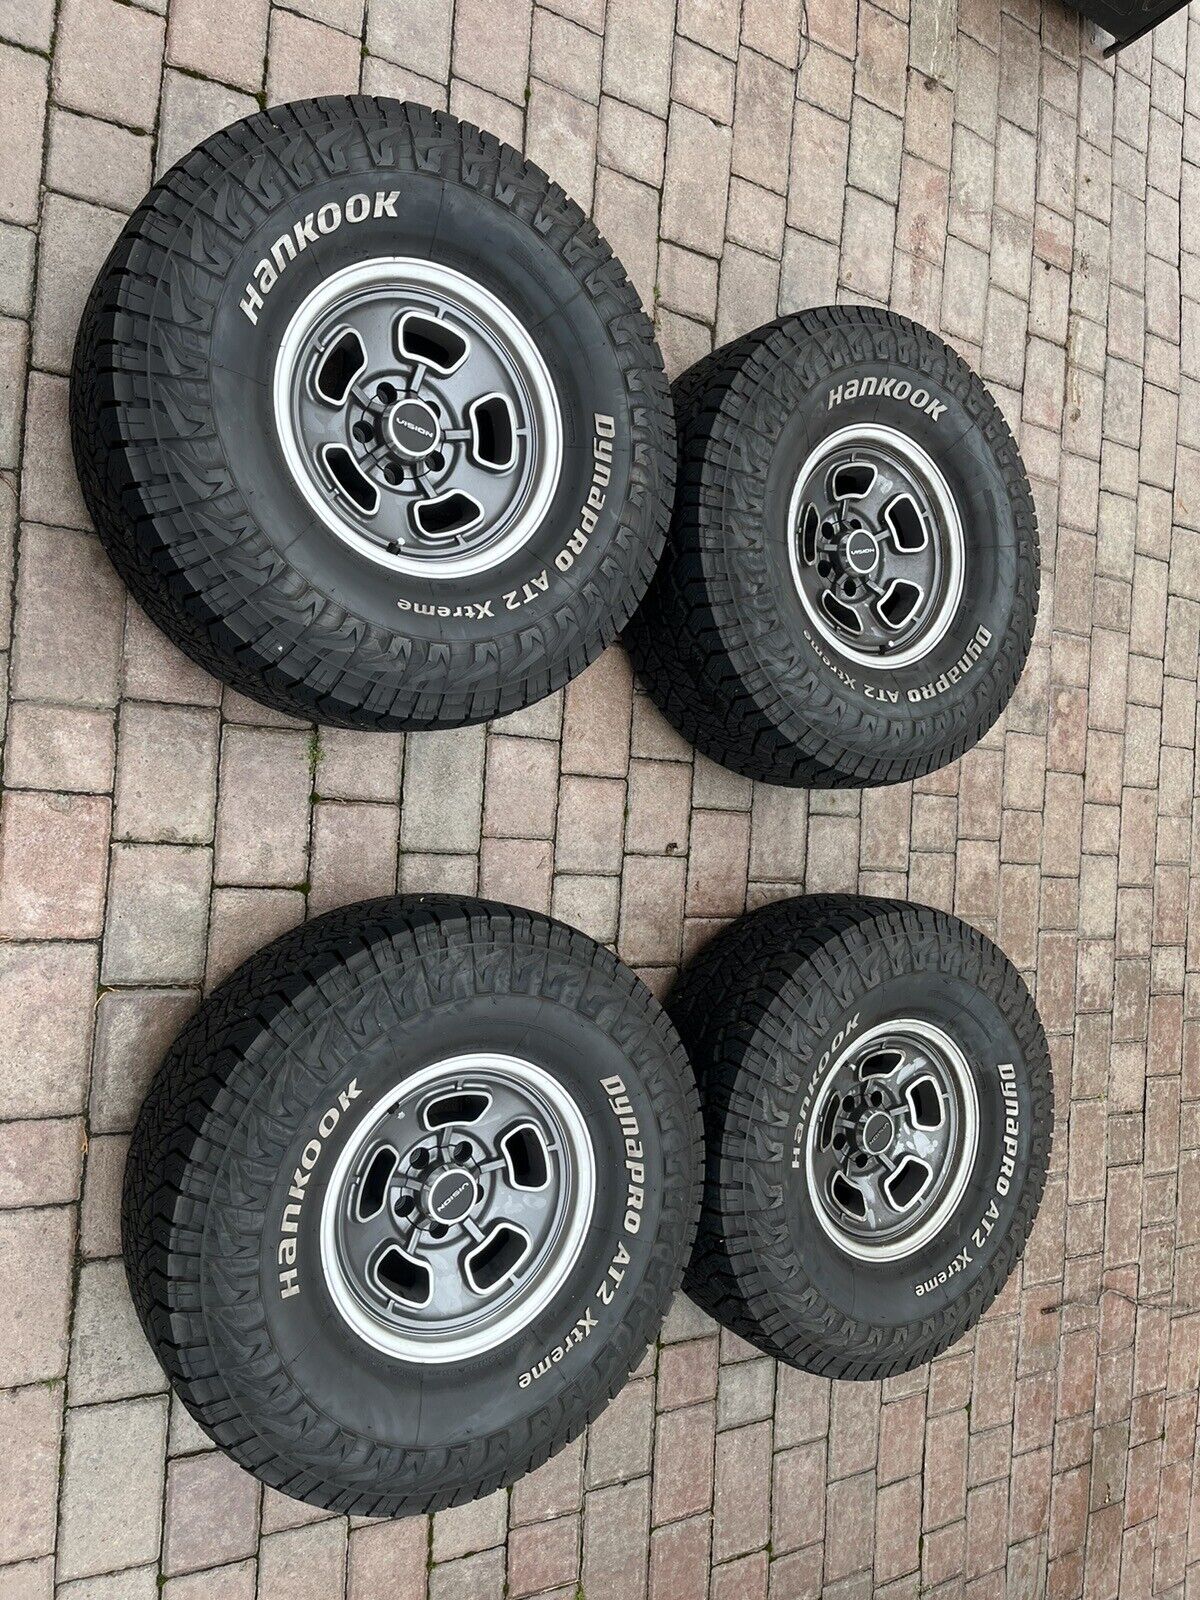 Vision wheels15x8/5x114.3 & 33”x12.5 Hankook At2 Tires